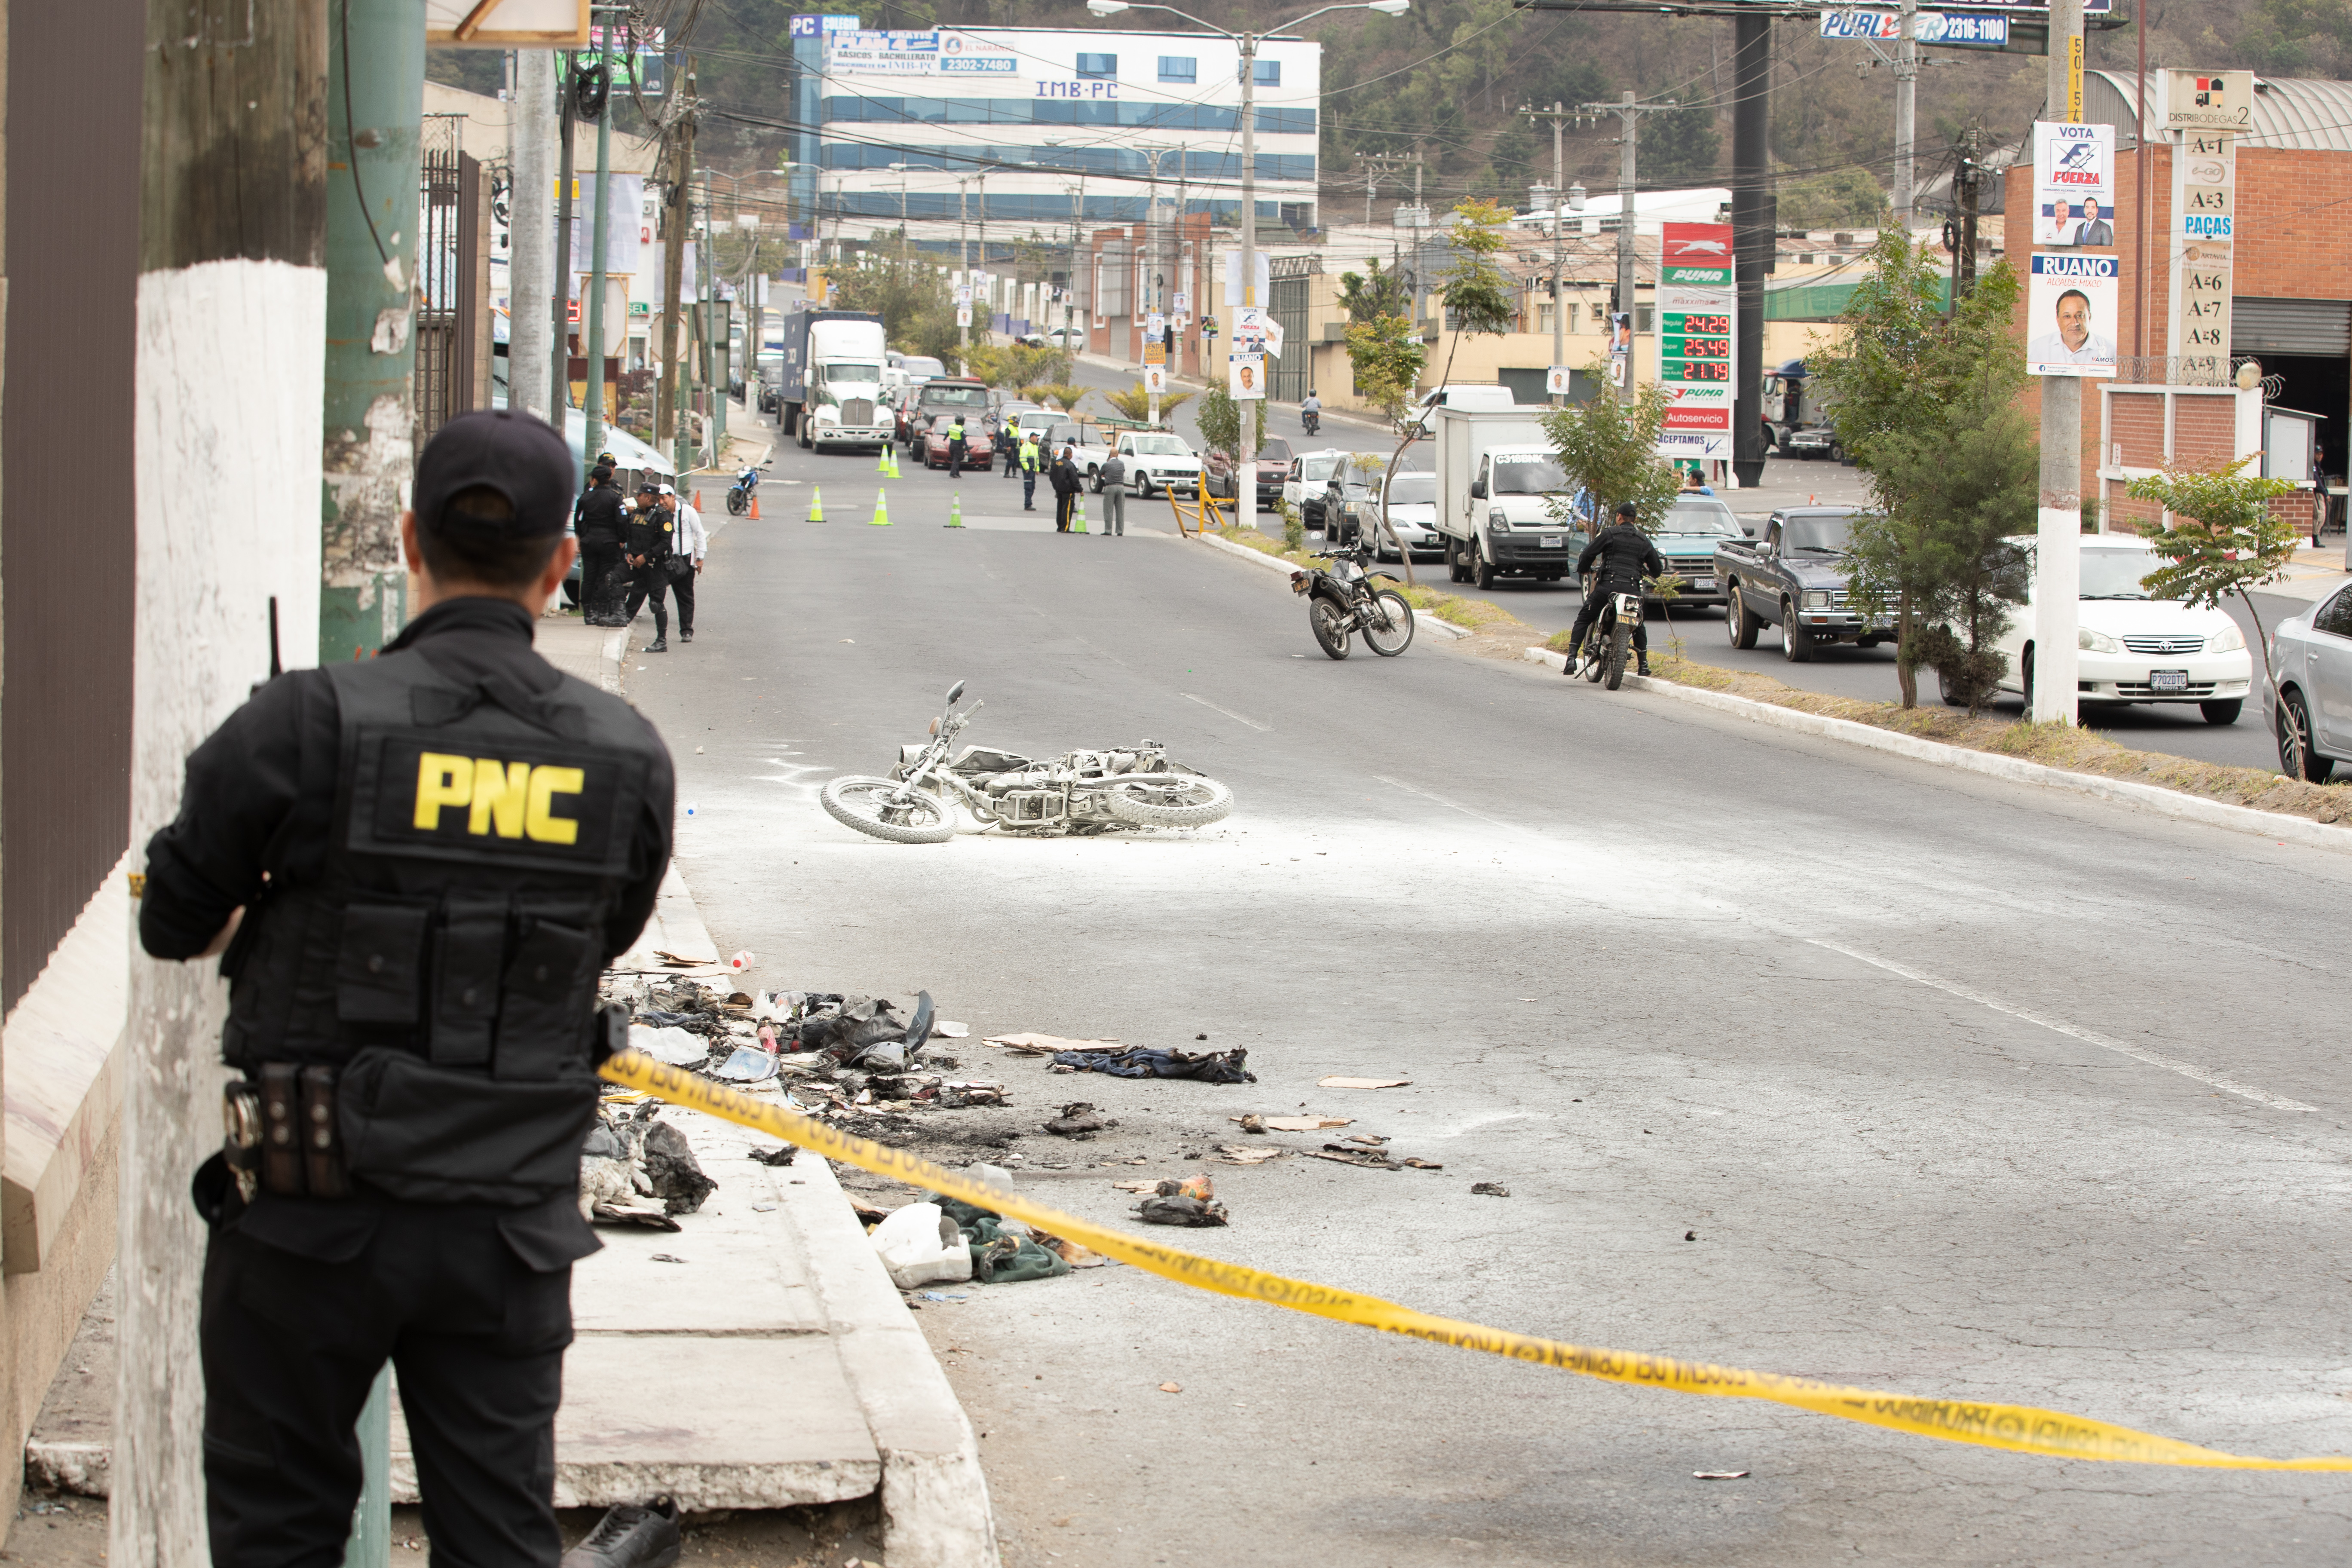 Un policía observa el lugar  donde fueron quemados los supuestos delincuentes que posteriormente murieron. (Foto Prensa Libre: Juan Diego González)

